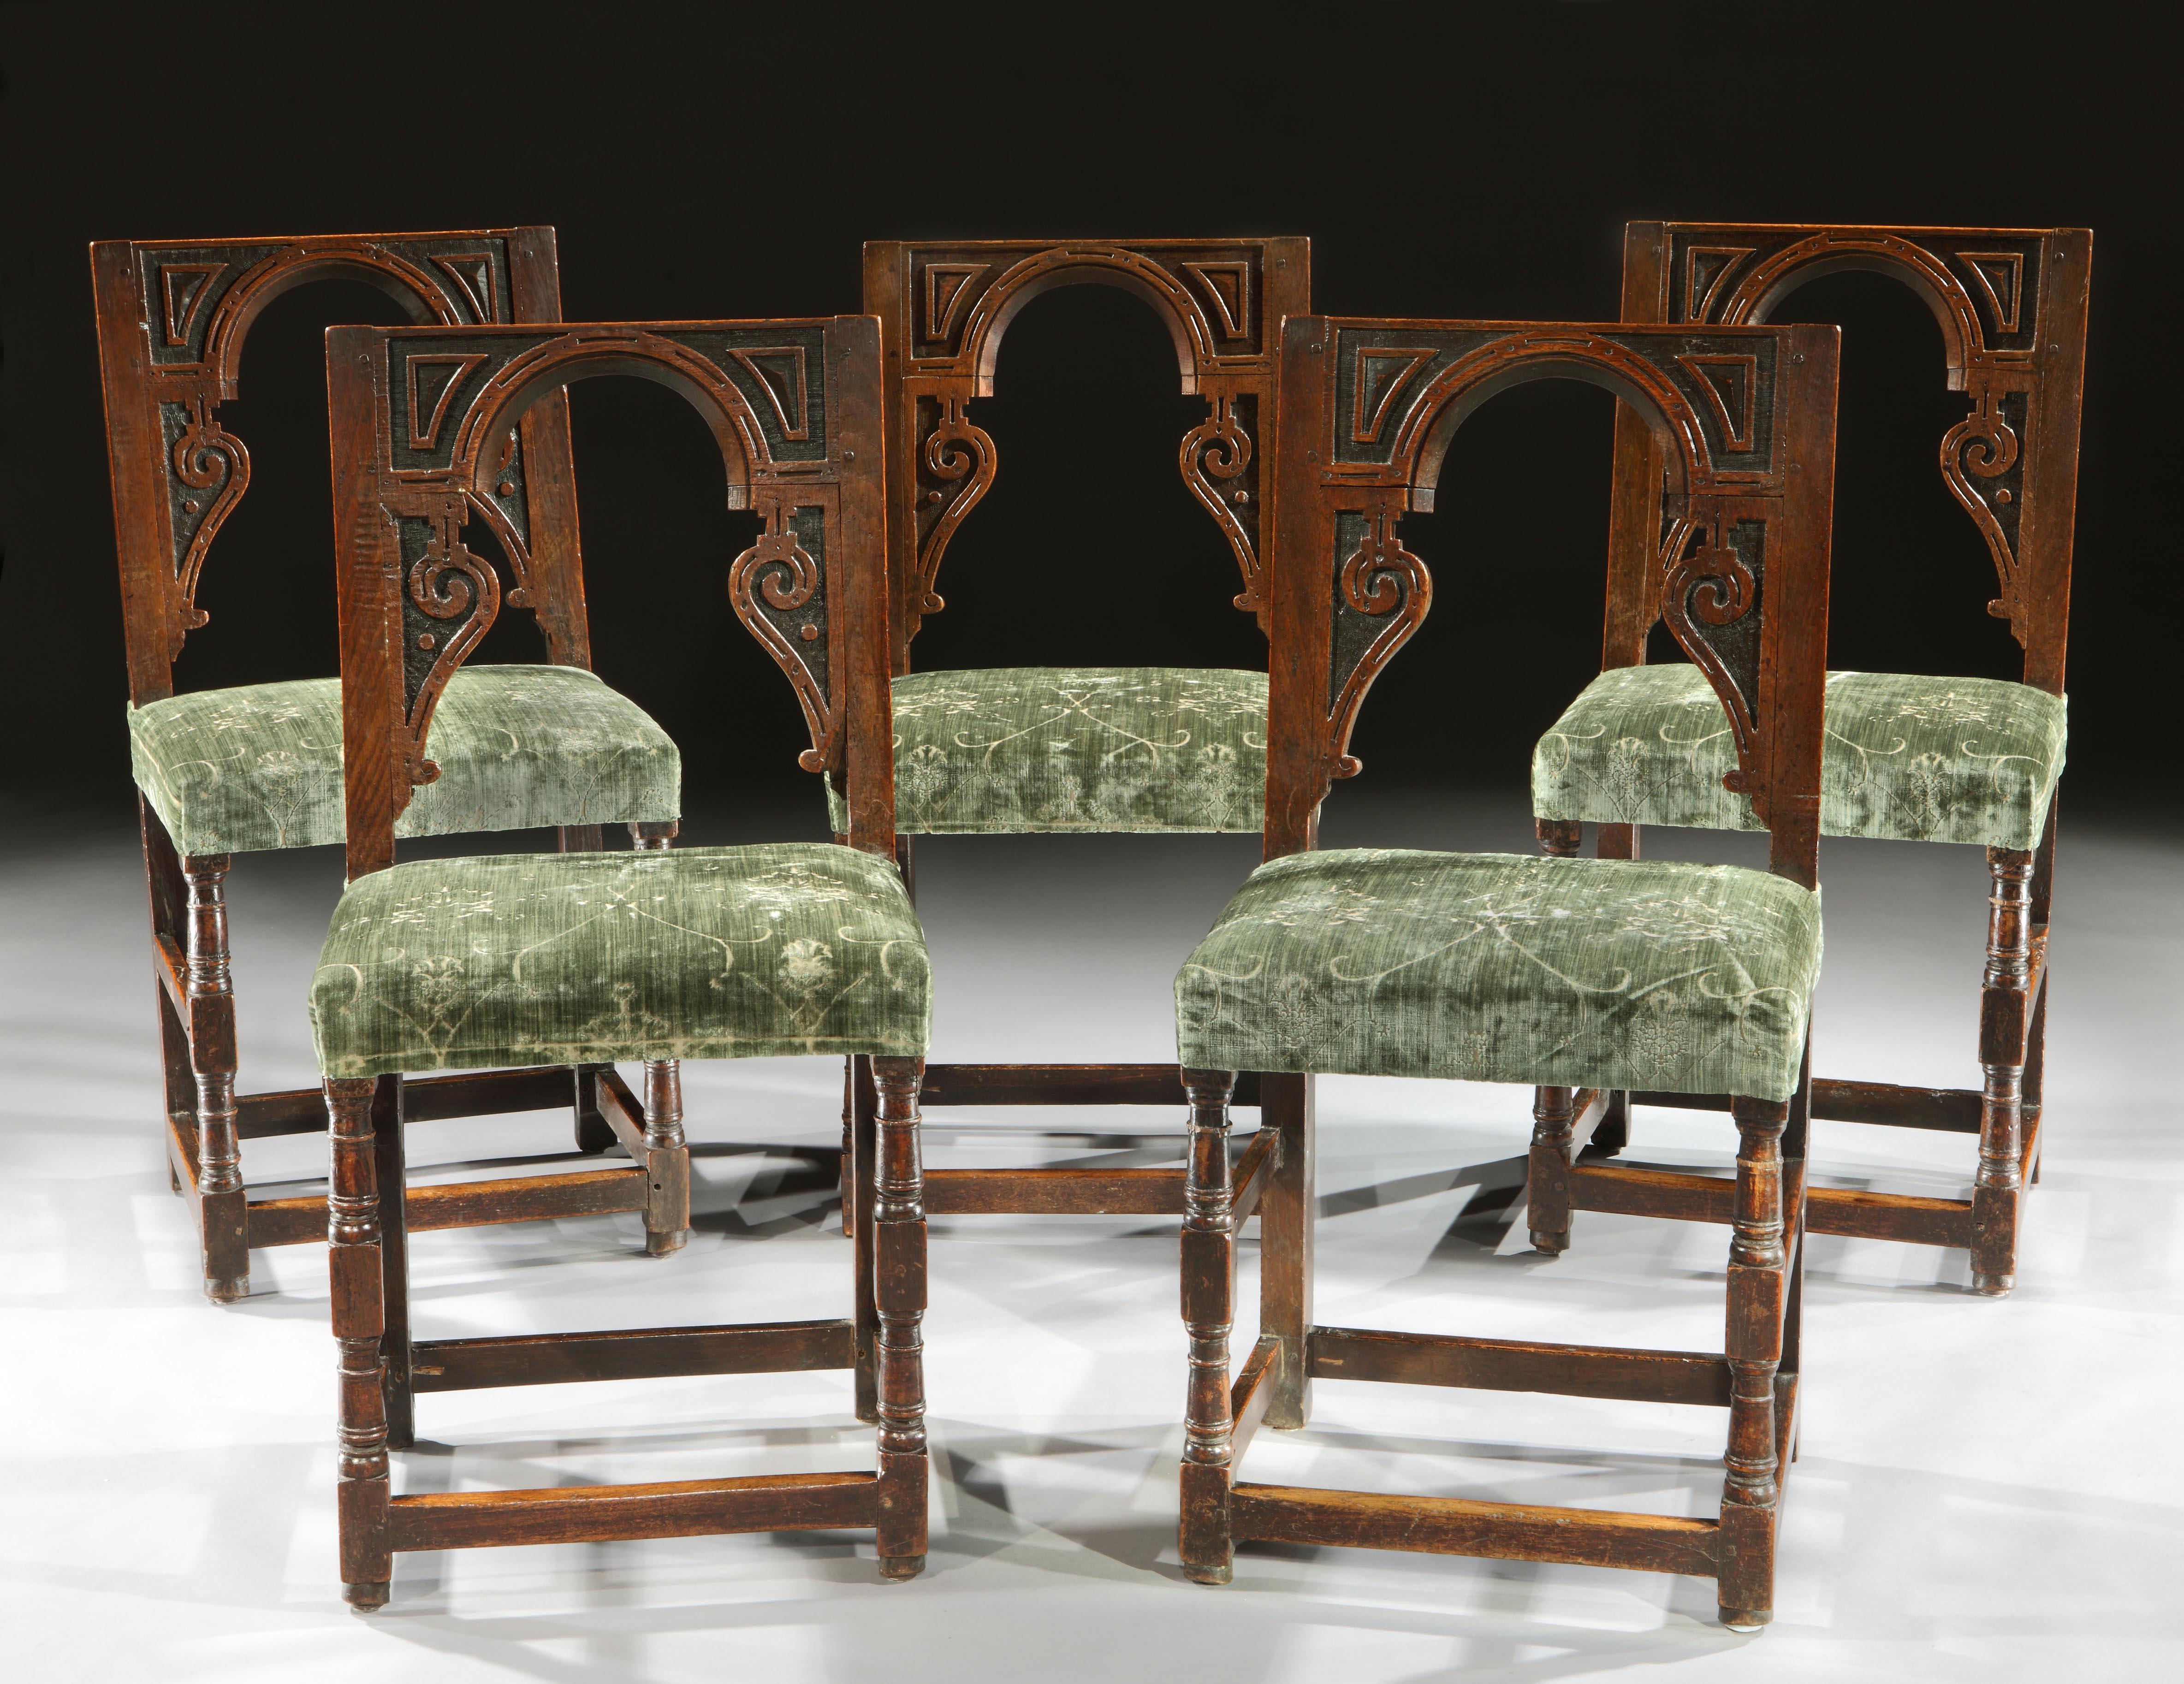 Ein Satz außergewöhnlich seltener englischer, architektonischer Hocker aus Eichenholz der Spätrenaissance, gepolstert mit einem salbeigrünen Renaissance-Samt des 19

- Die architektonisch inspirierten Rückenlehnen dieser Stühle sind auffallend,